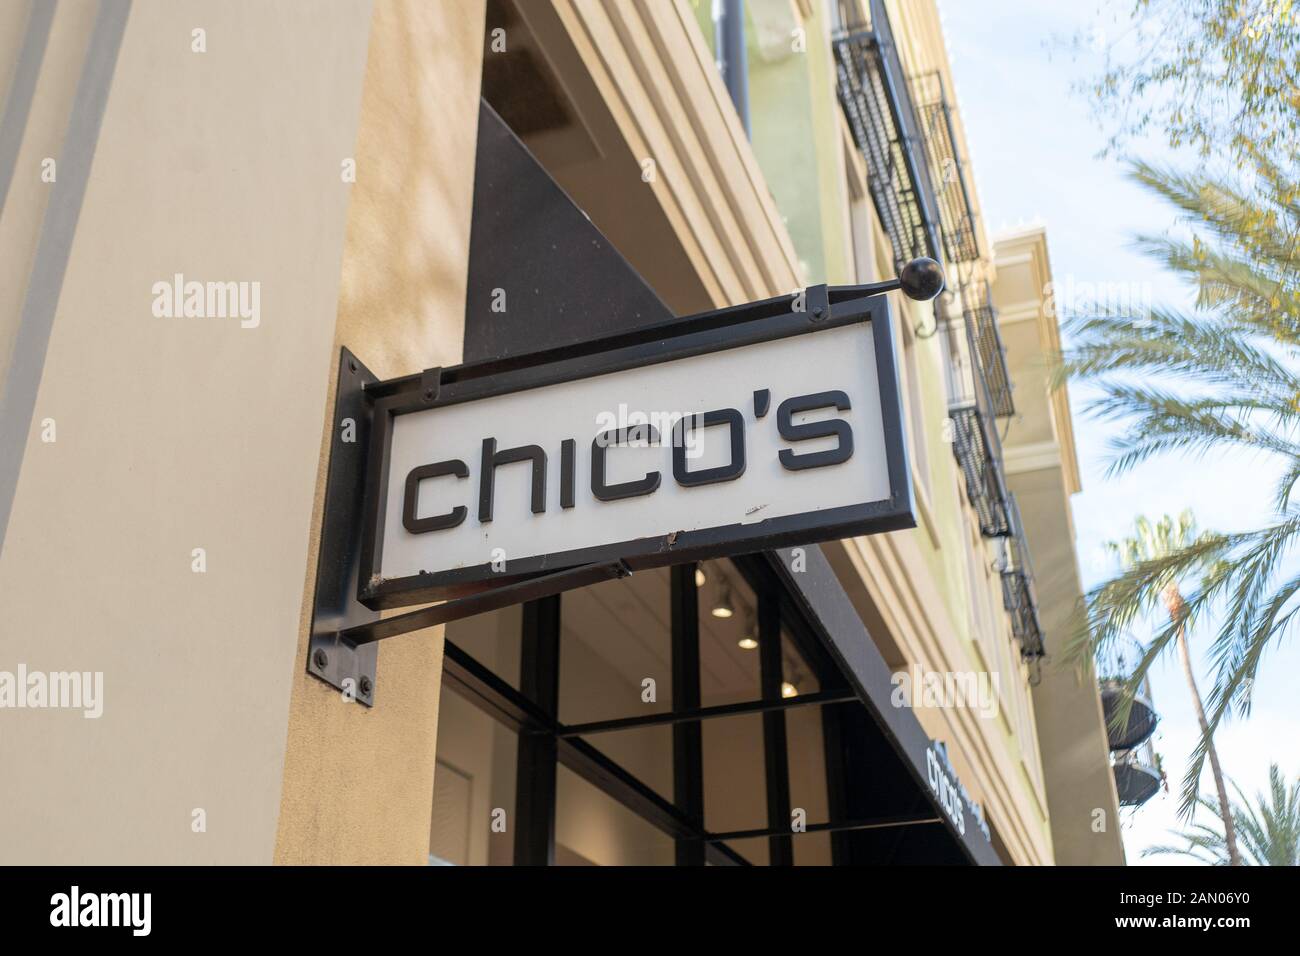 Inscrivez-vous sur façade à Chico's store sur Santana Row dans la Silicon Valley, San Jose, Californie, le 3 janvier 2020. () Banque D'Images